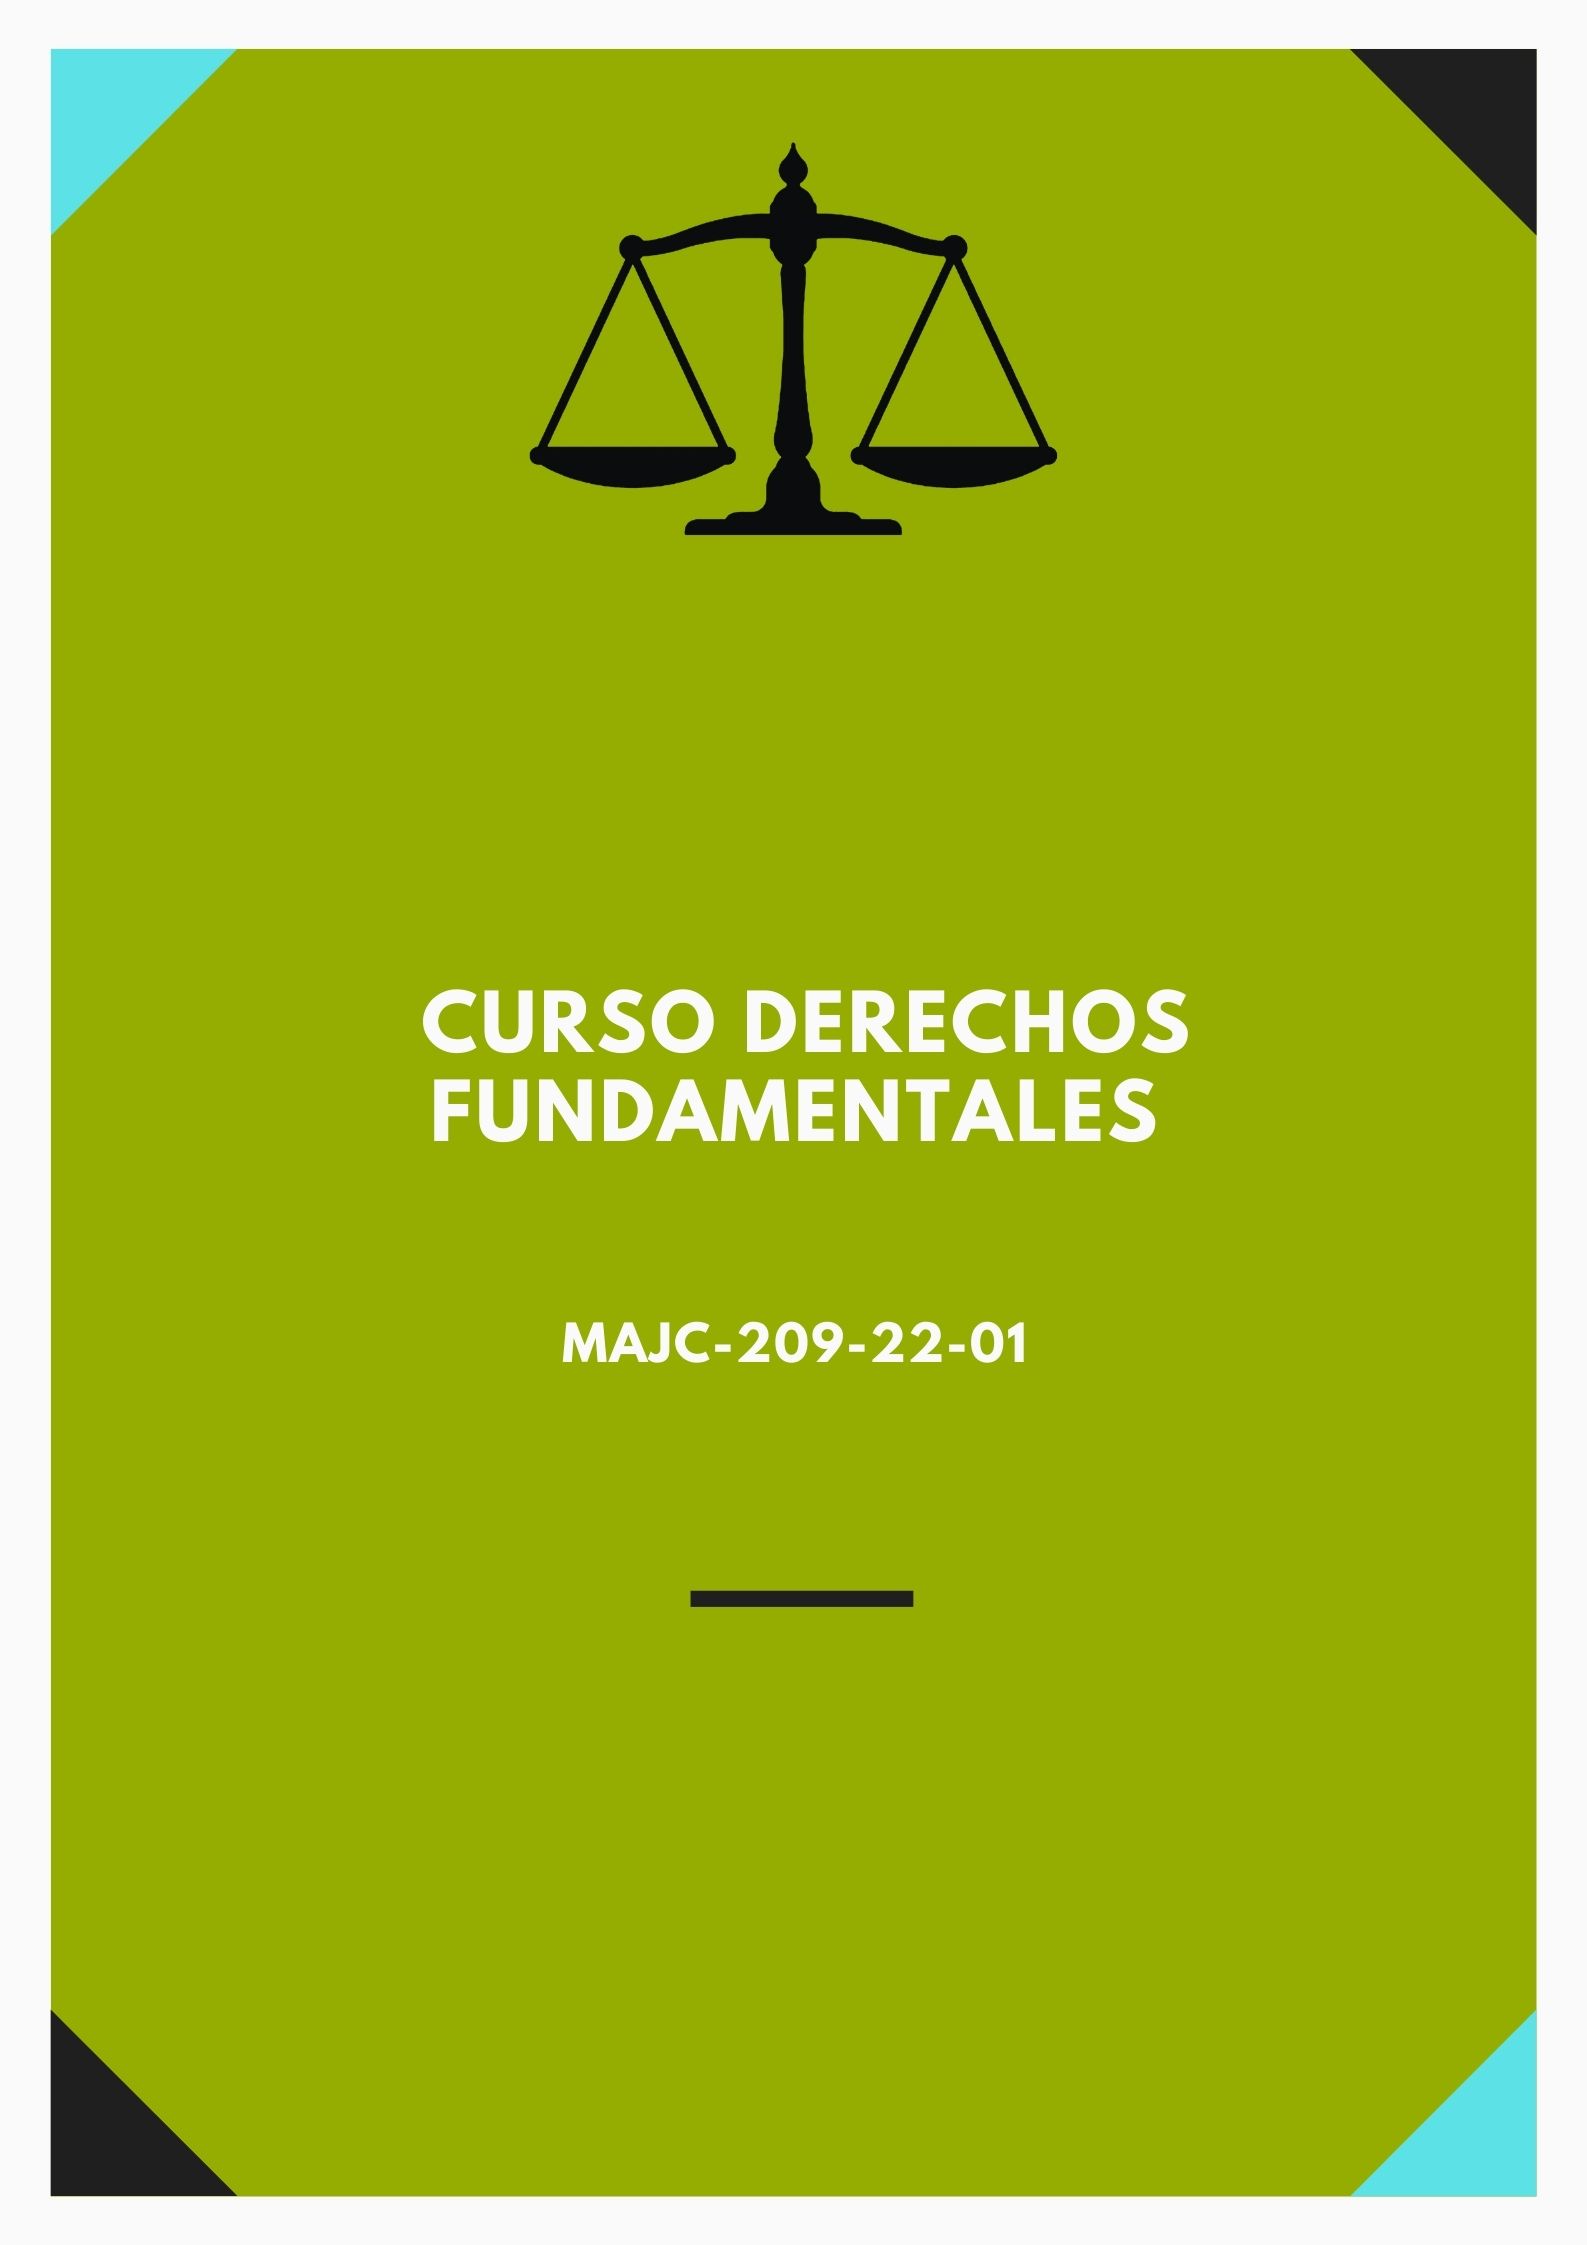 MAJC-209-22-01 Curso Derechos Fundamentales